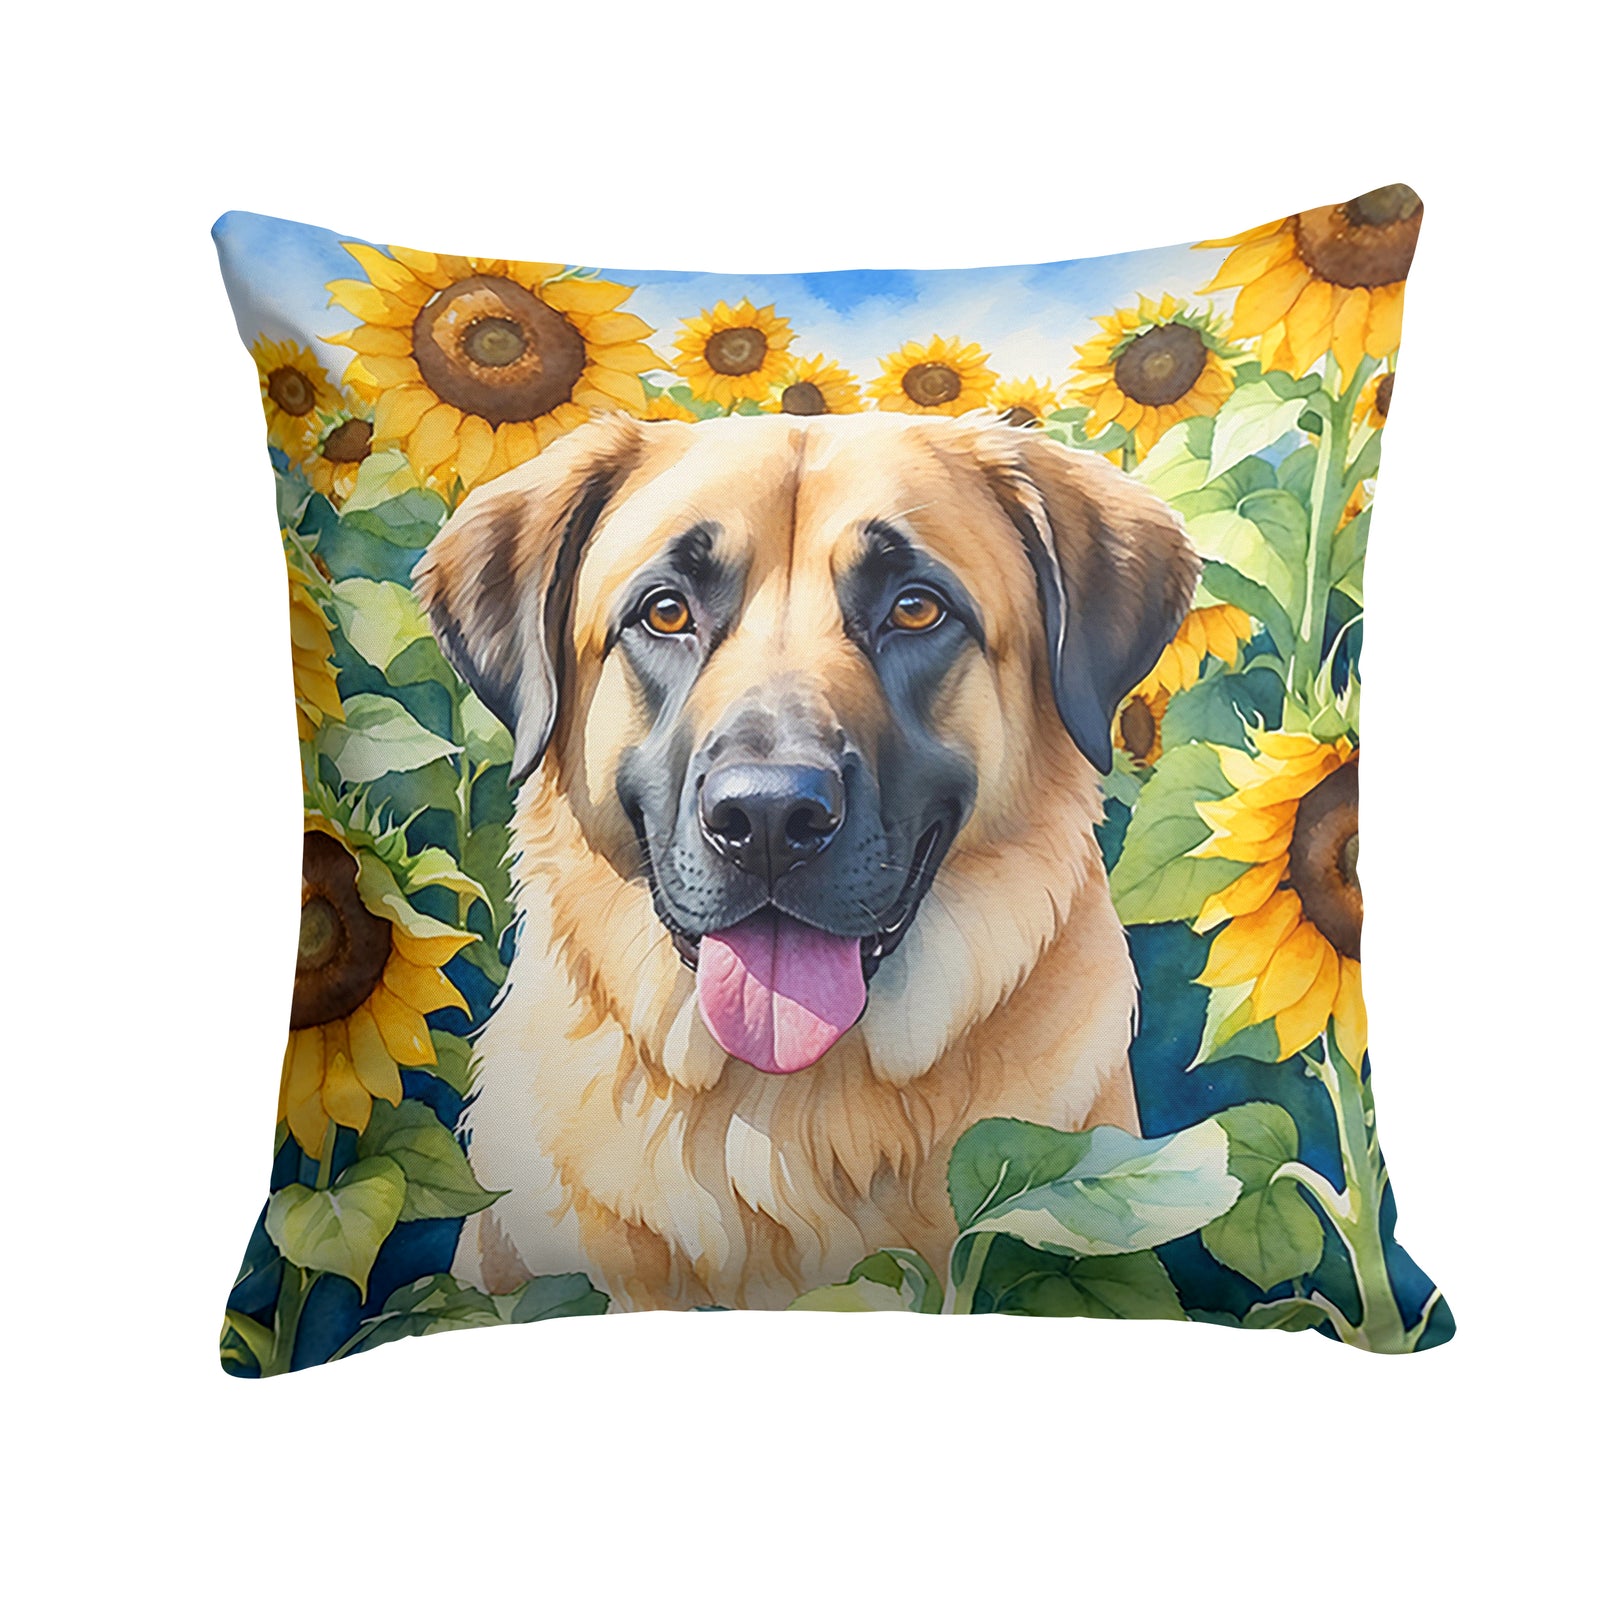 Buy this Anatolian Shepherd in Sunflowers Throw Pillow